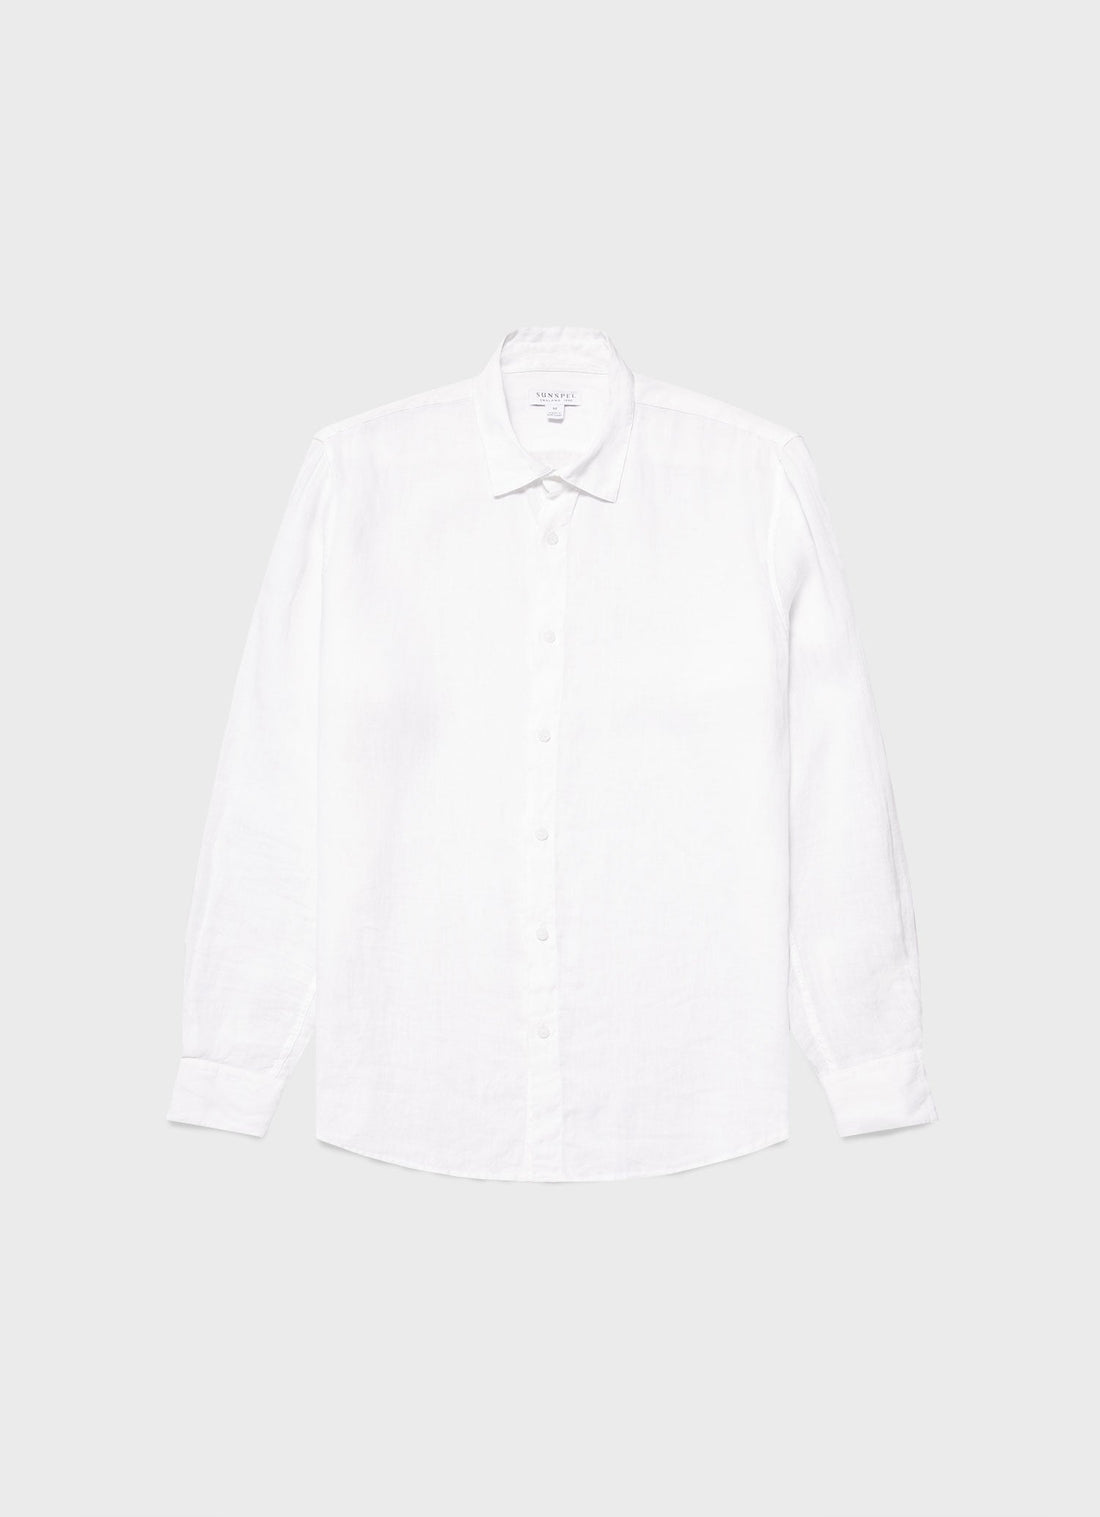 Men's Linen Shirt in White